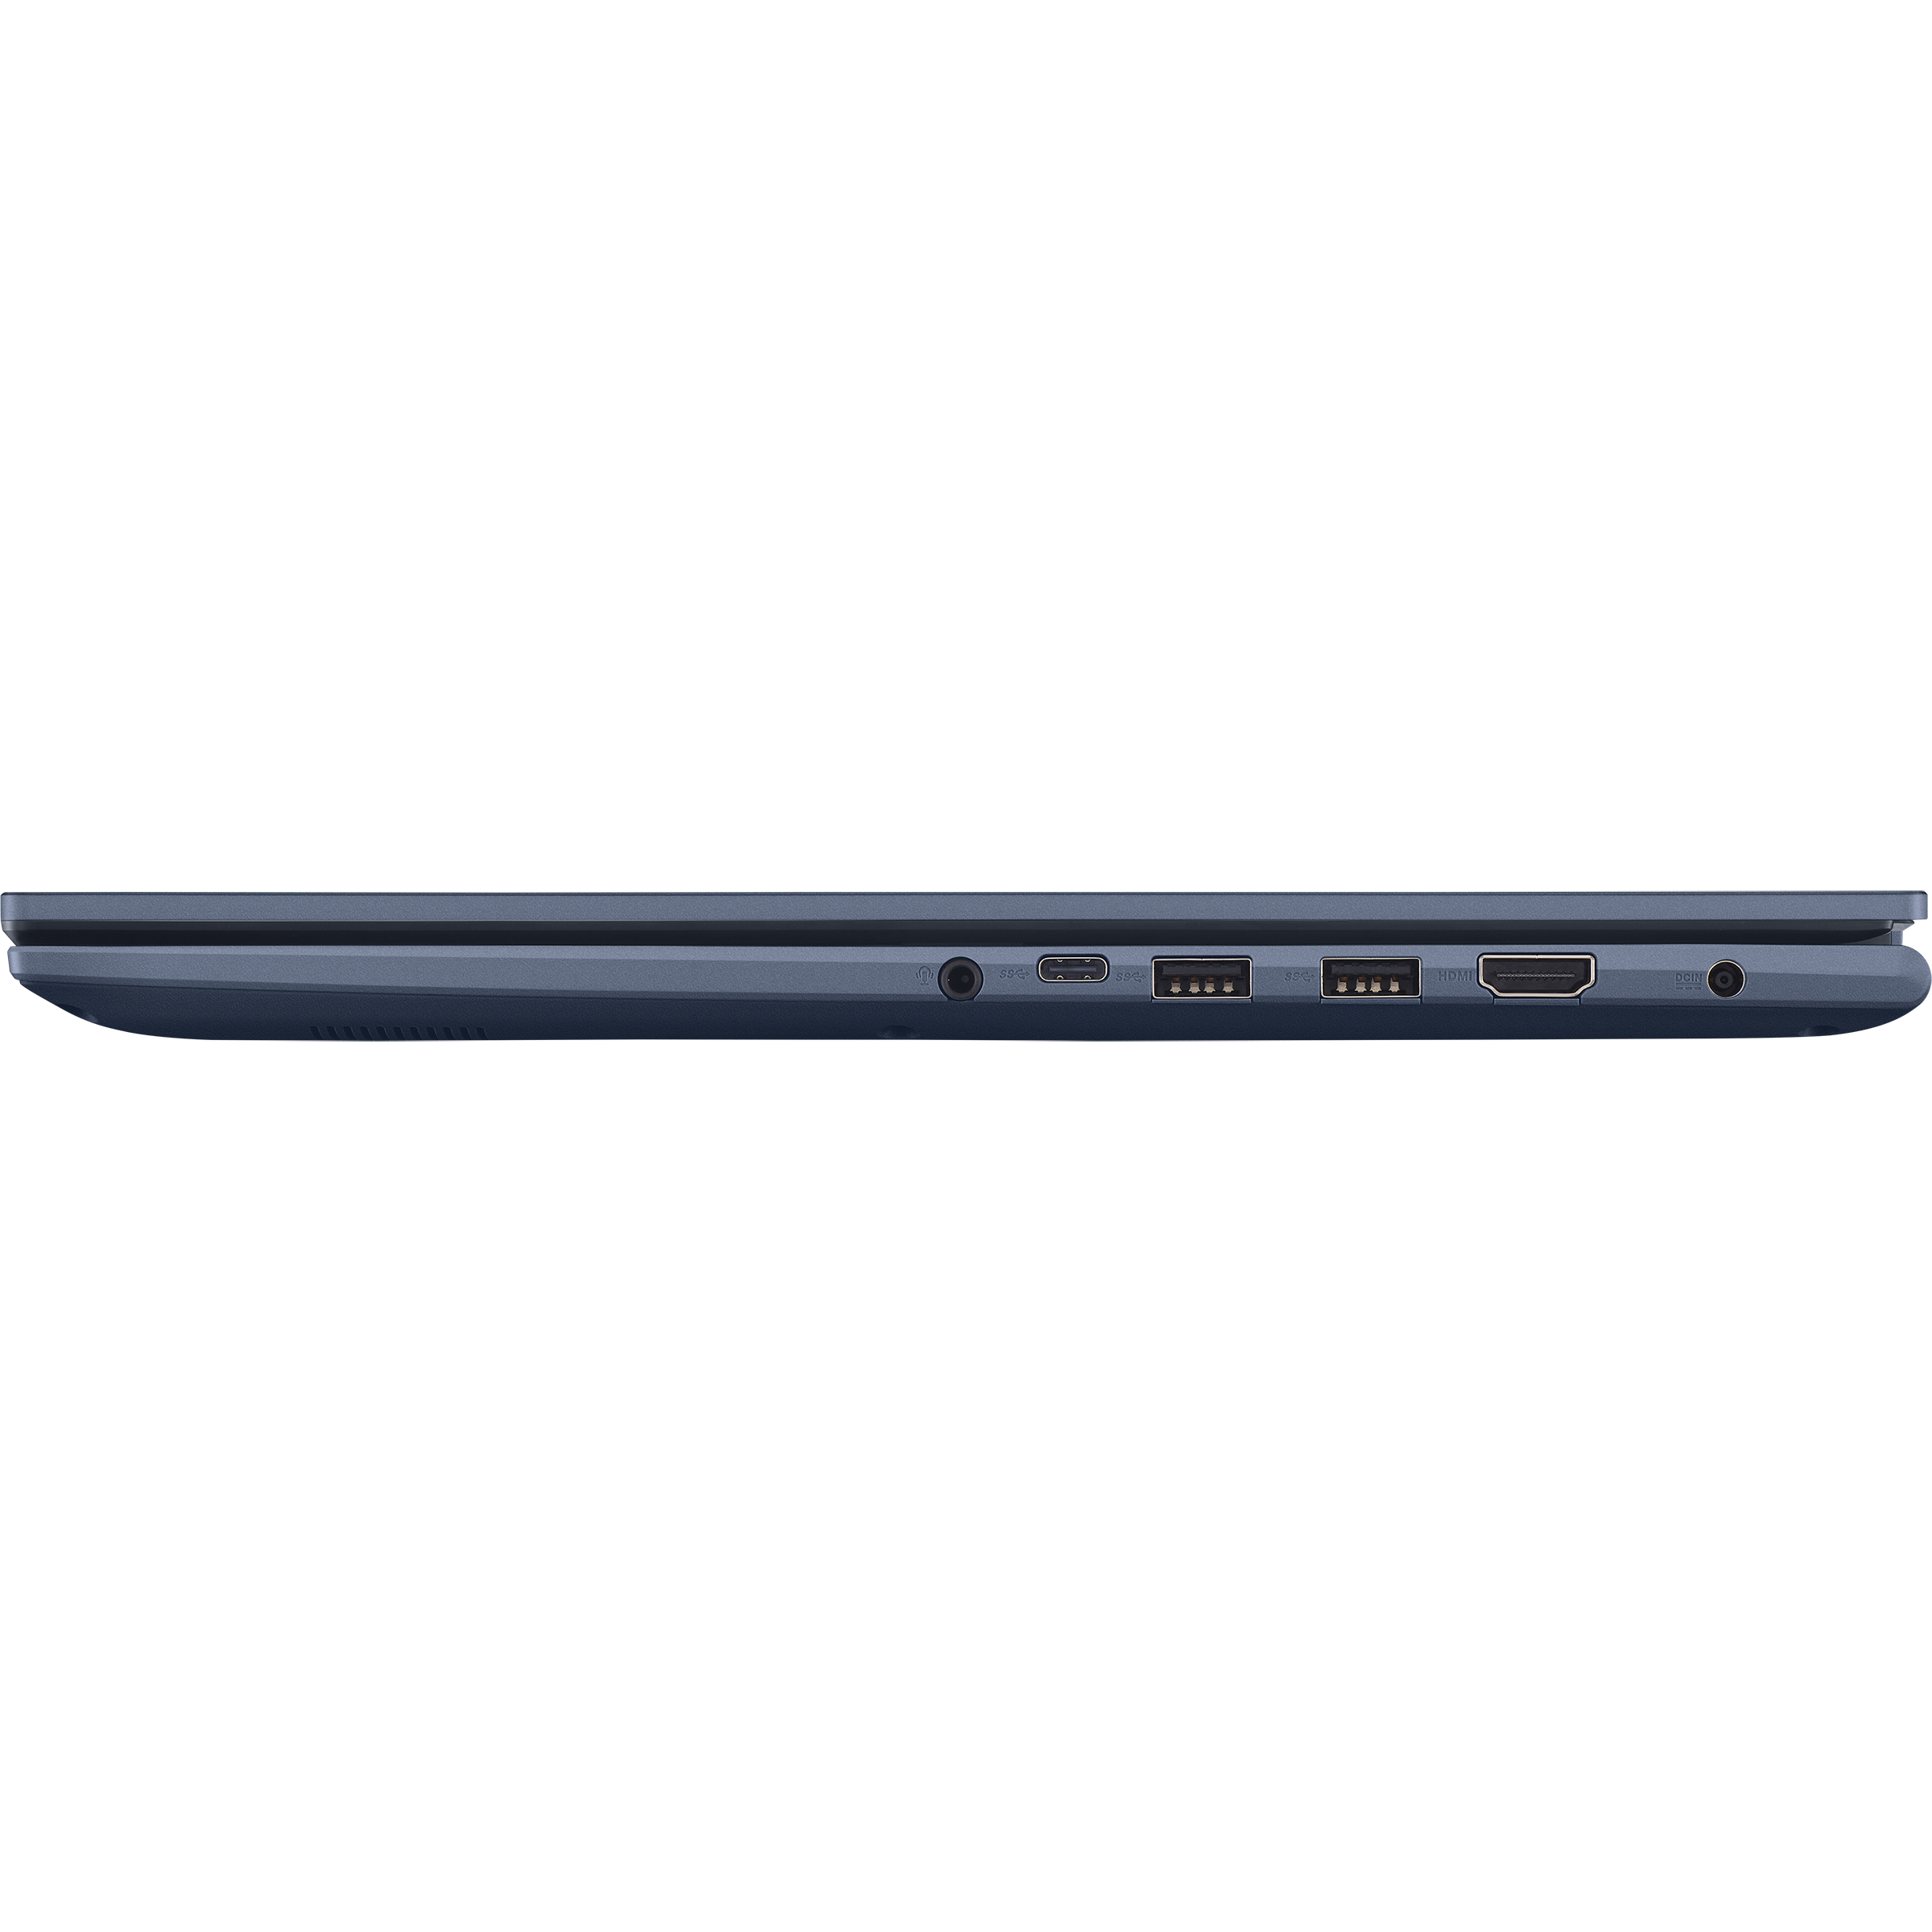 17 For Home｜ASUS 5000 (M1702, Global series)｜Laptops Ryzen Vivobook AMD